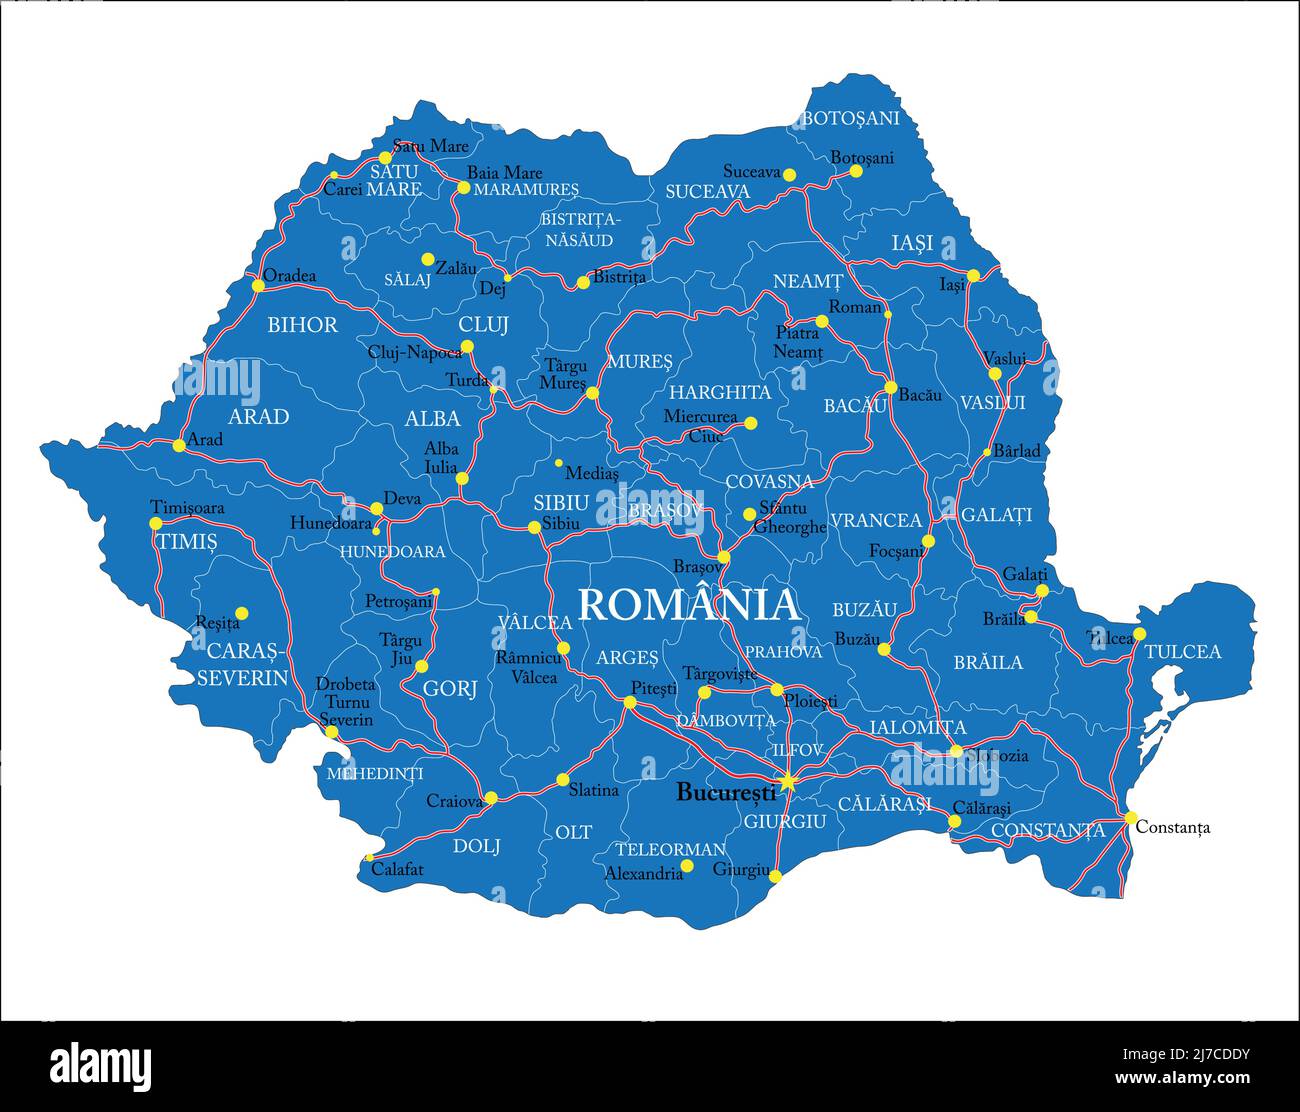 Mappa vettoriale molto dettagliata della Romania con regioni amministrative, principali città e strade. Illustrazione Vettoriale